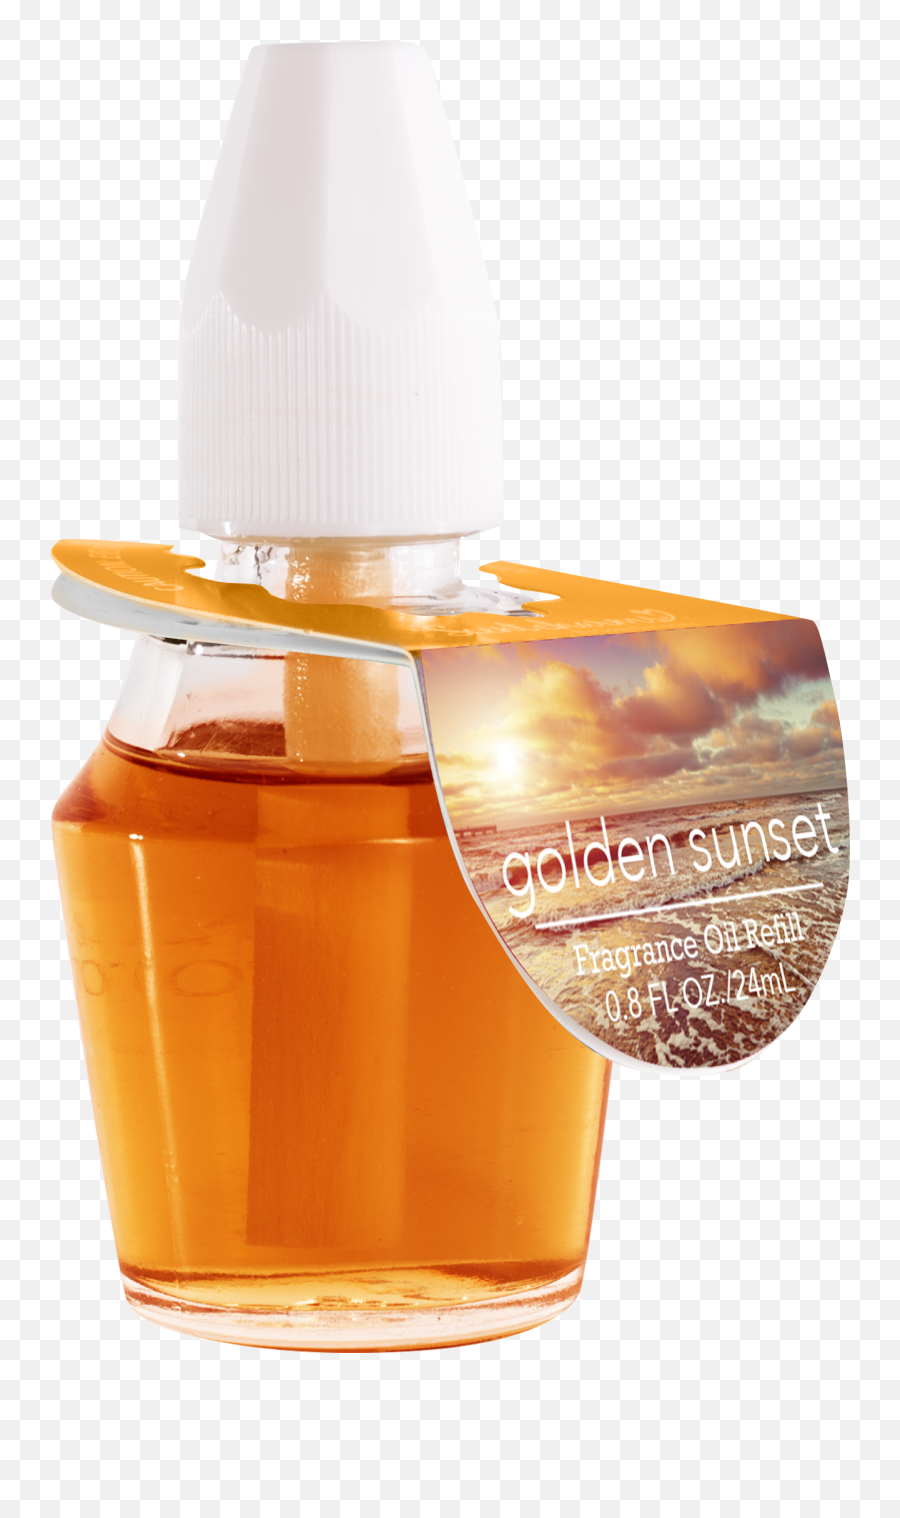 Golden Sunset Fragrance Oil Emoji,Sunset Png